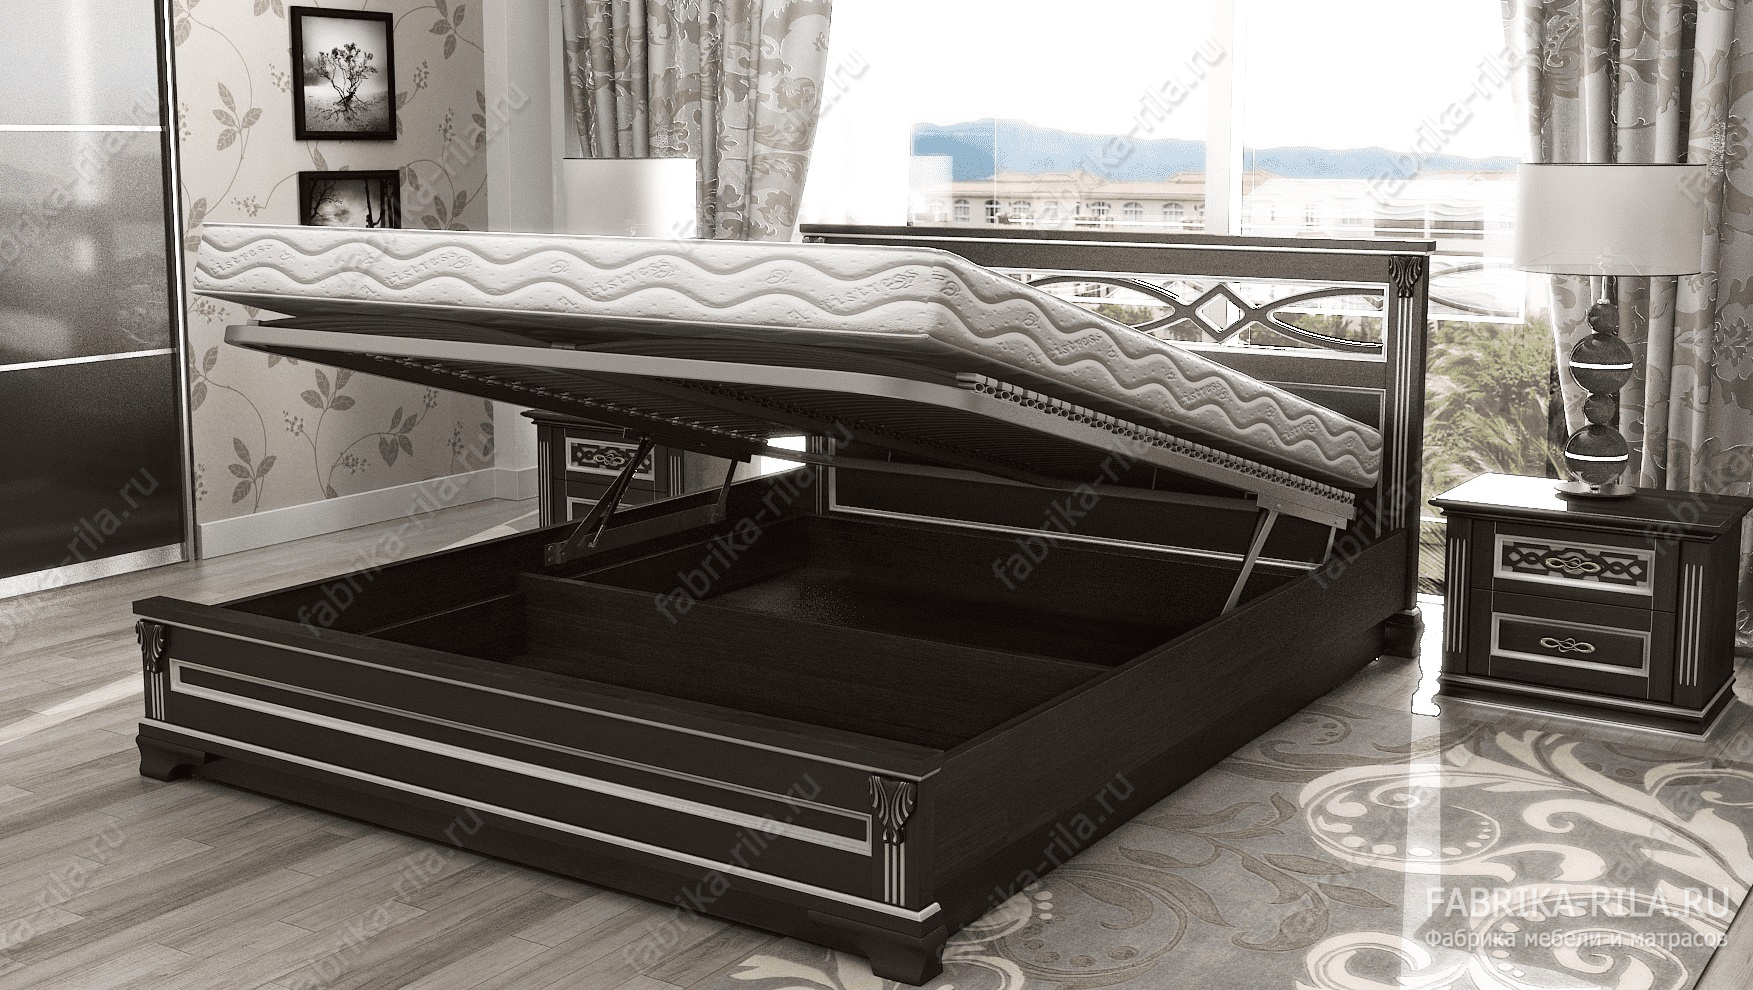 Кровать Lirоna 1 — 140x190 см. из сосны